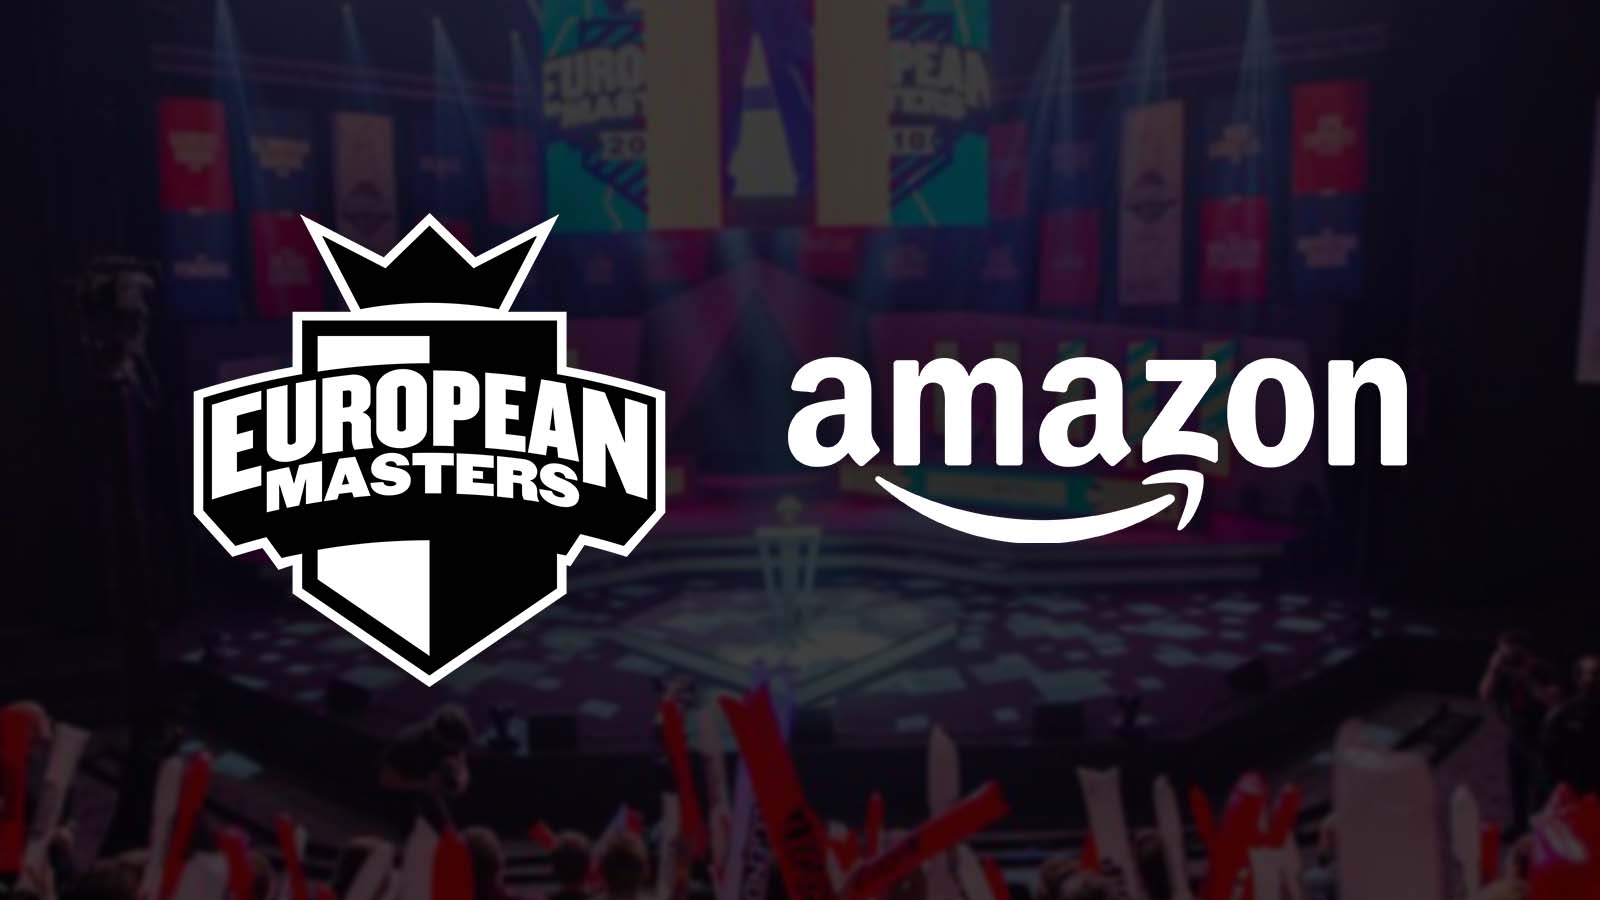 Amazon European Masters